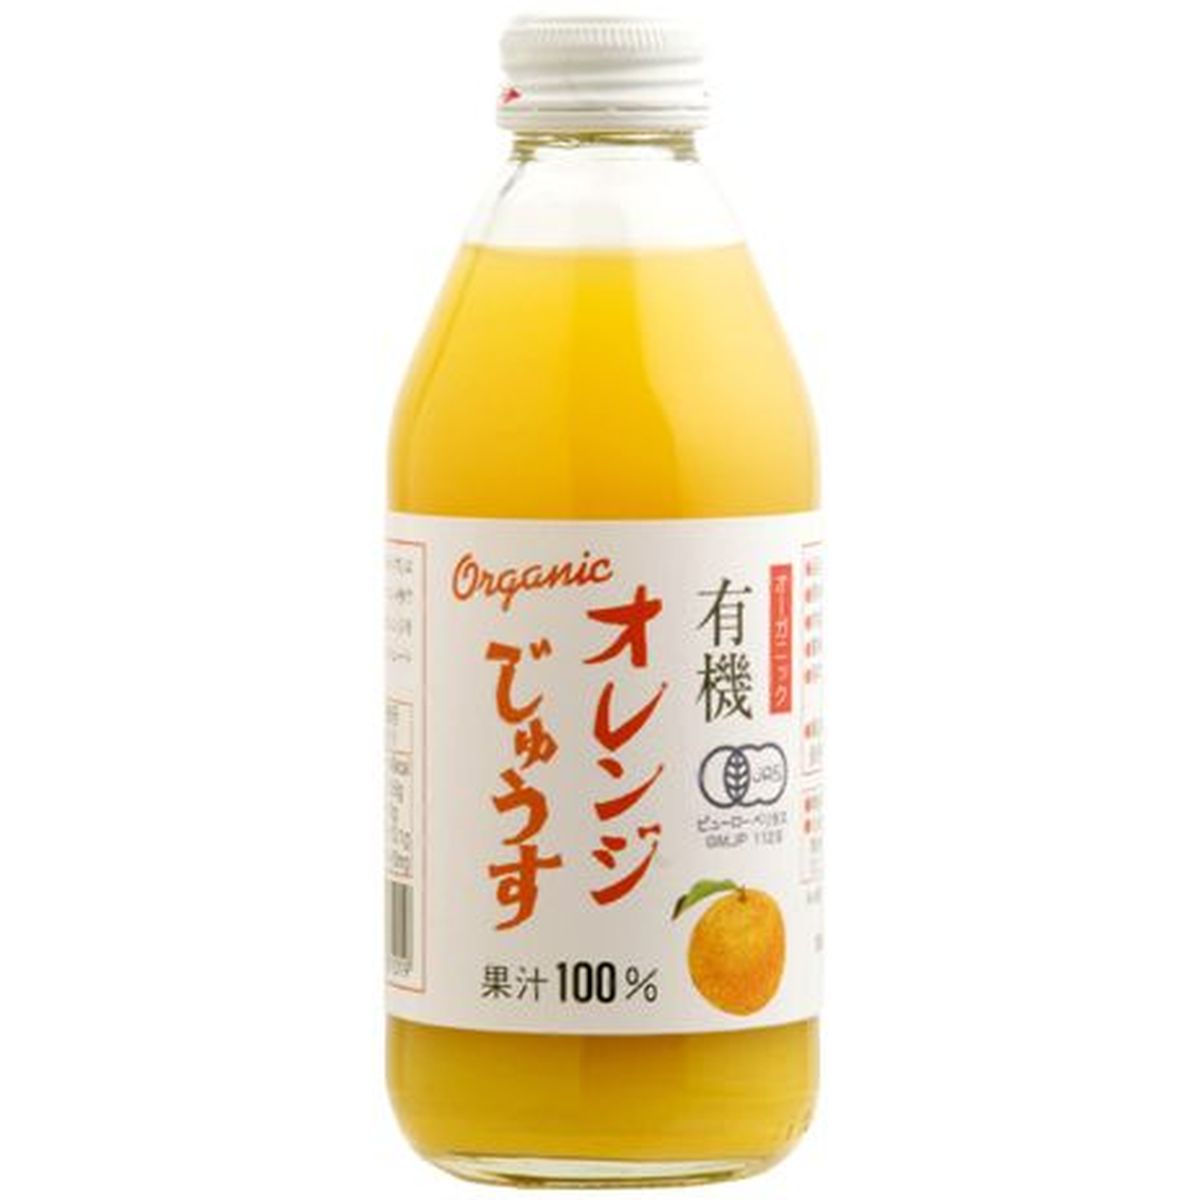 【24個入リ】アルプス 有機 オレンジジュウス 瓶 250ml